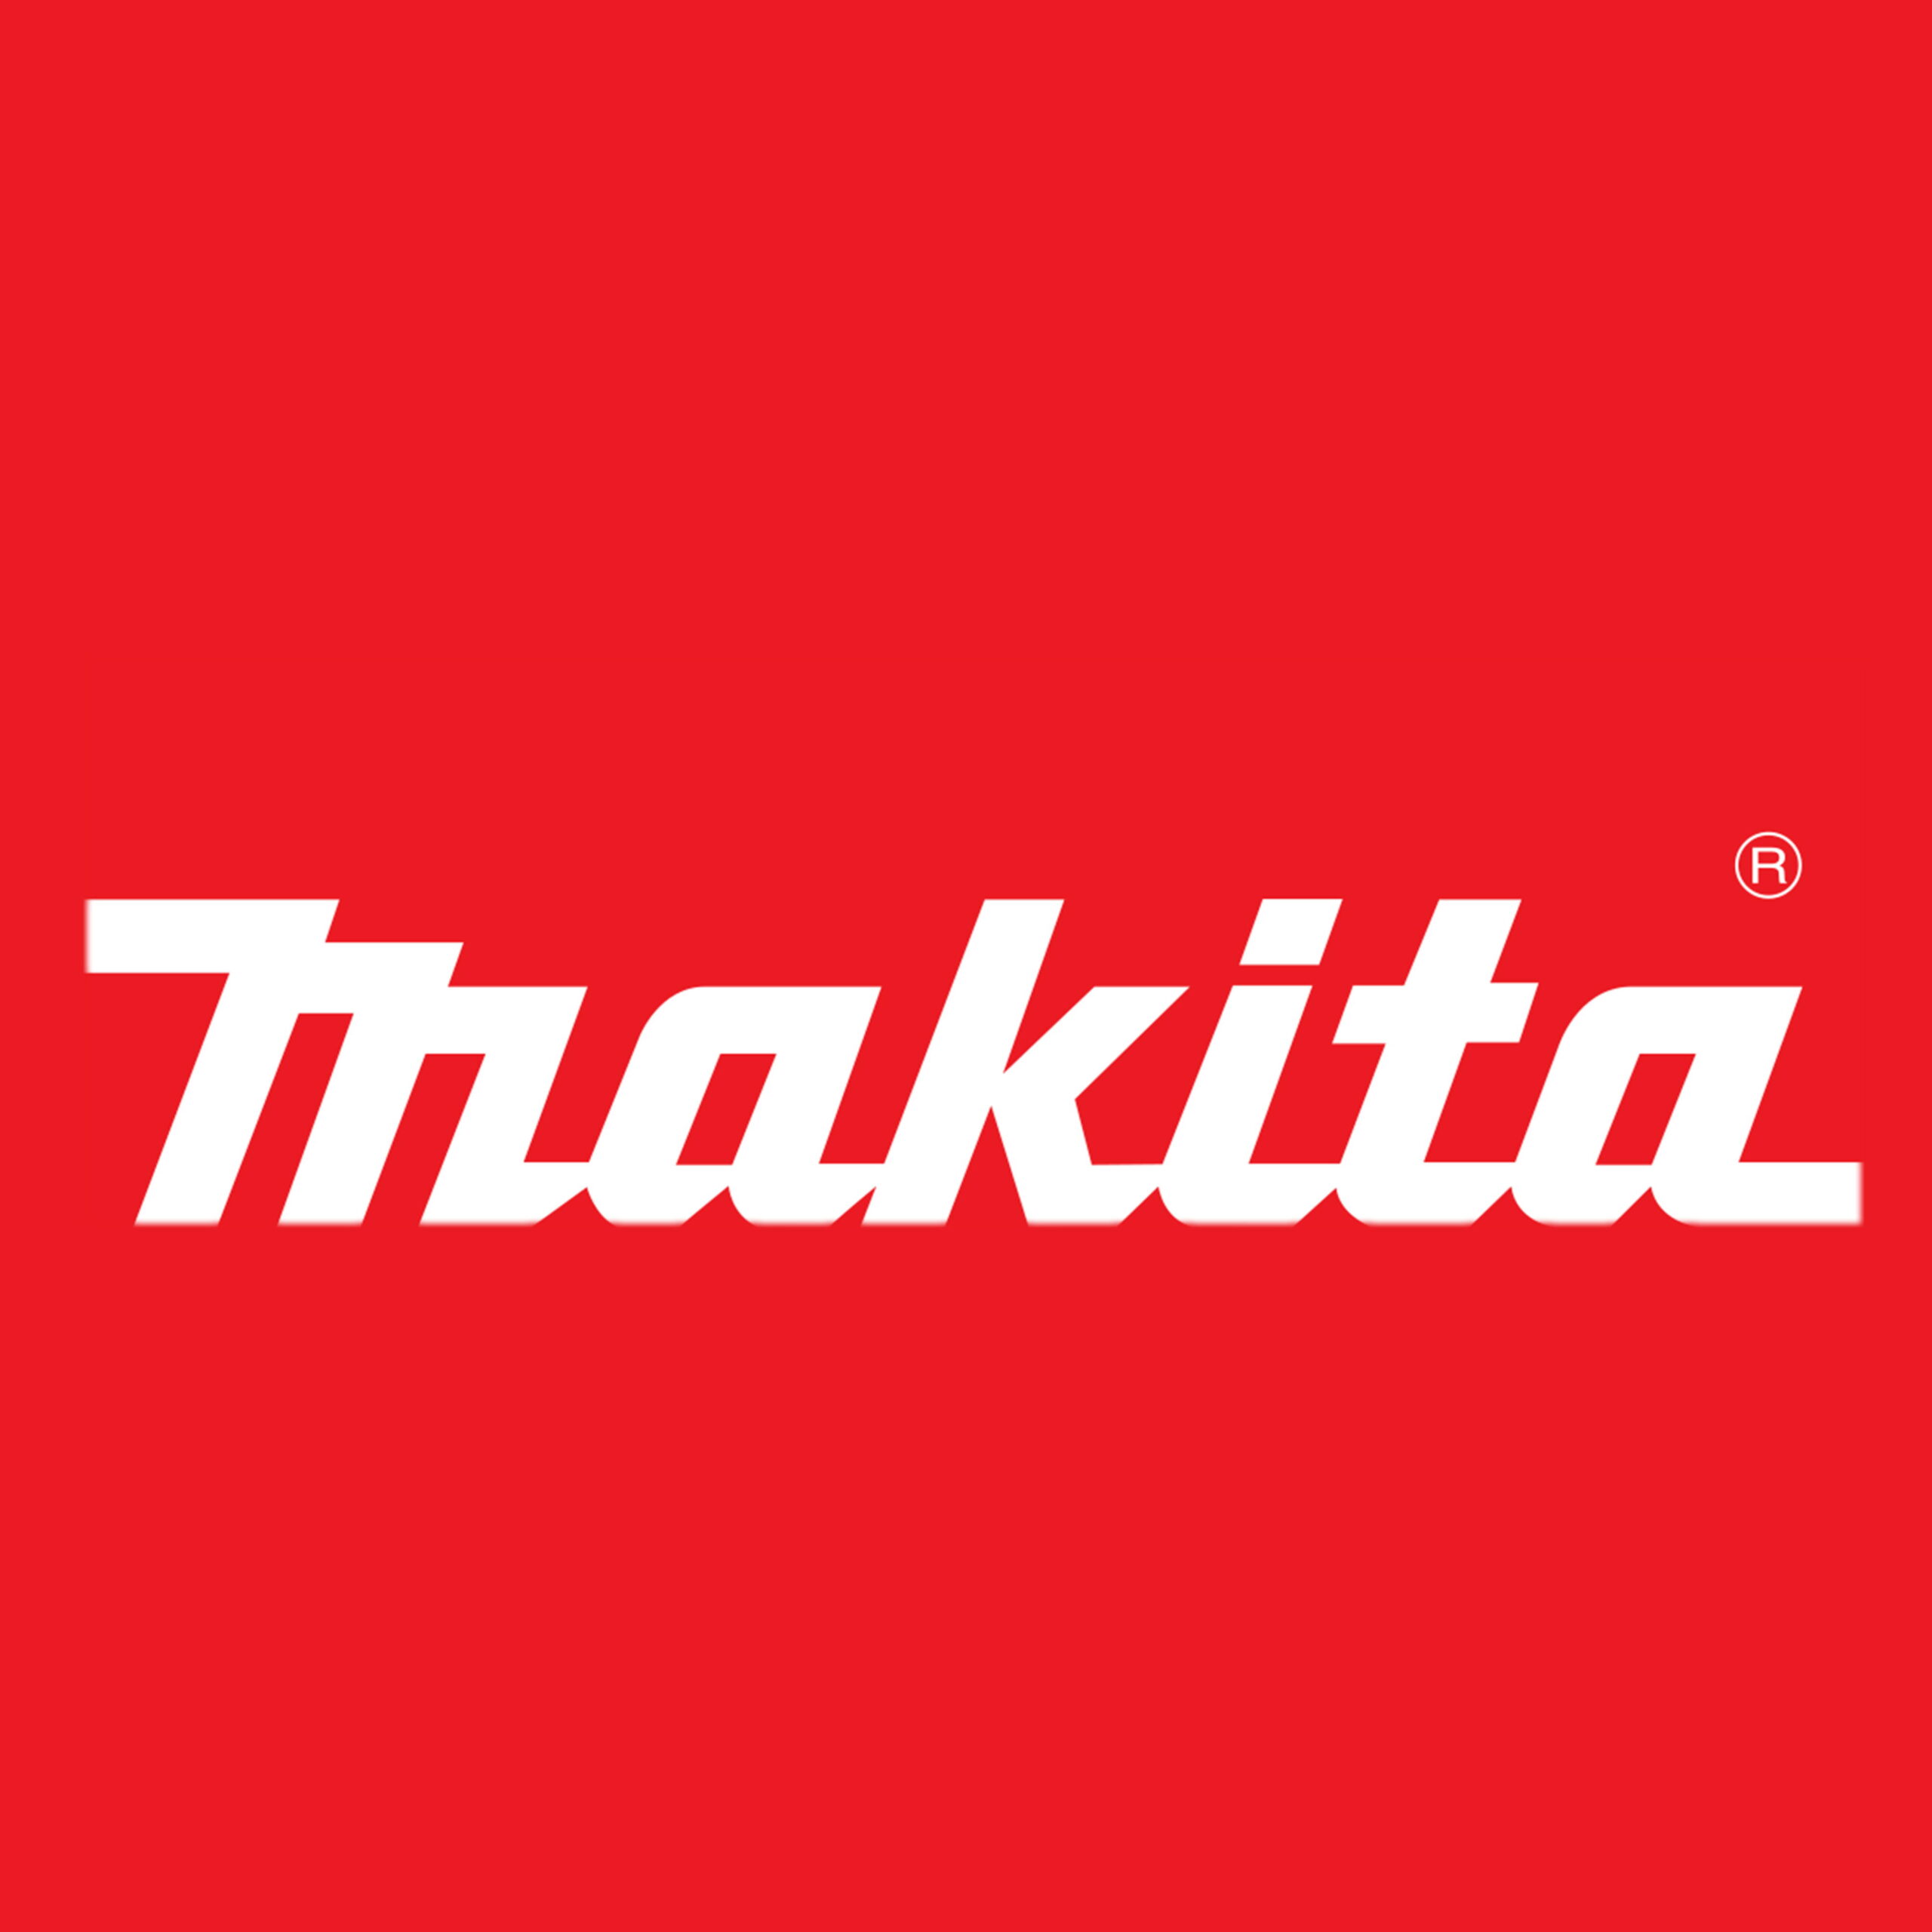 マキタ/Makita | 栃木県の工具買取専門館 エコガレッジ